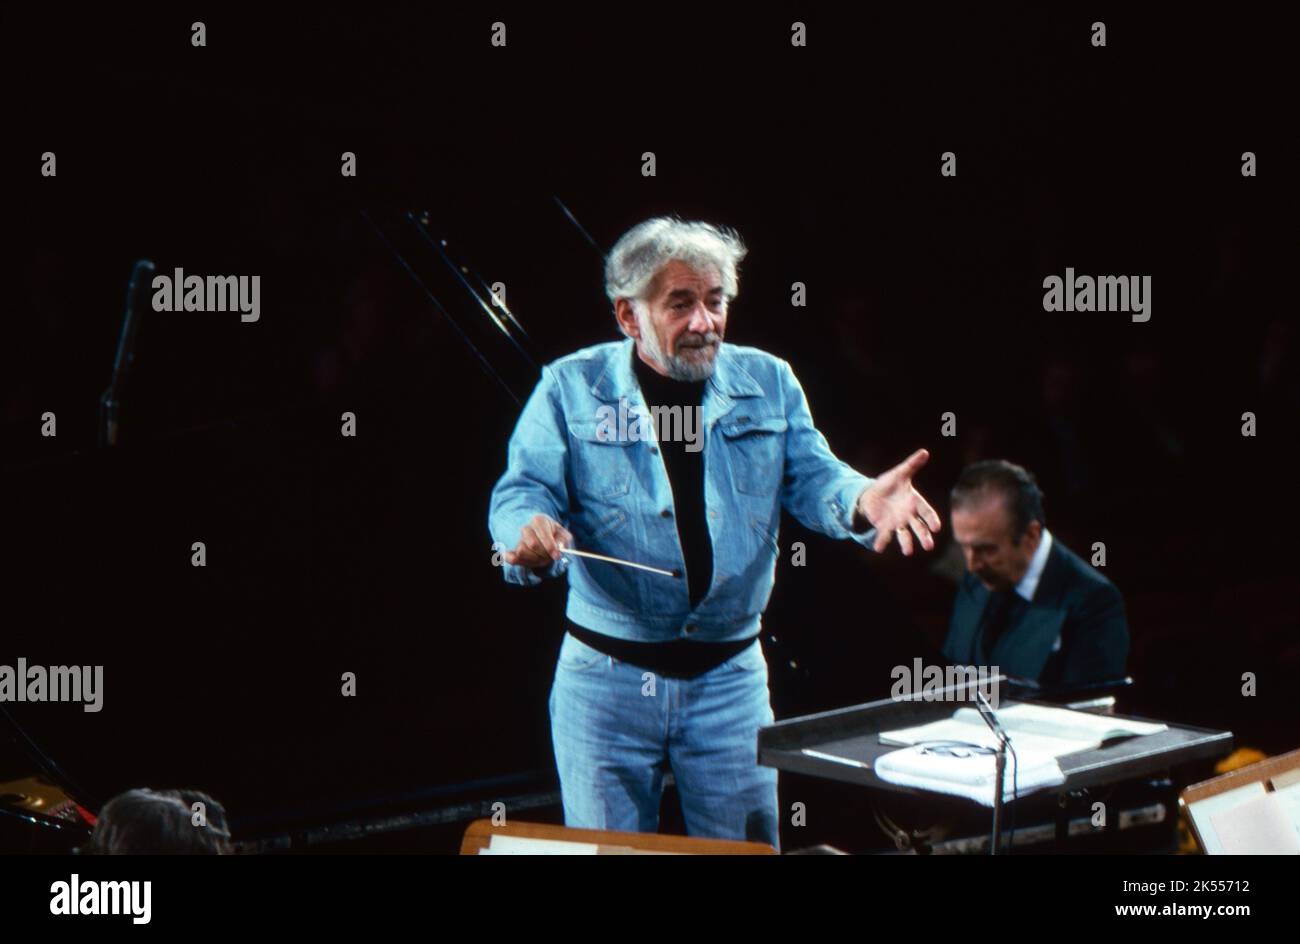 Leonard Bernstein, amerikanischer Komponist, Pianist und Dirigent, dirigiert Beethoven mit dem Symphonieorchester des Bayerischen Rundfunks in München, Pianist Claudio Arrau, hinten rechts. Deutschland 1977. Stock Photo